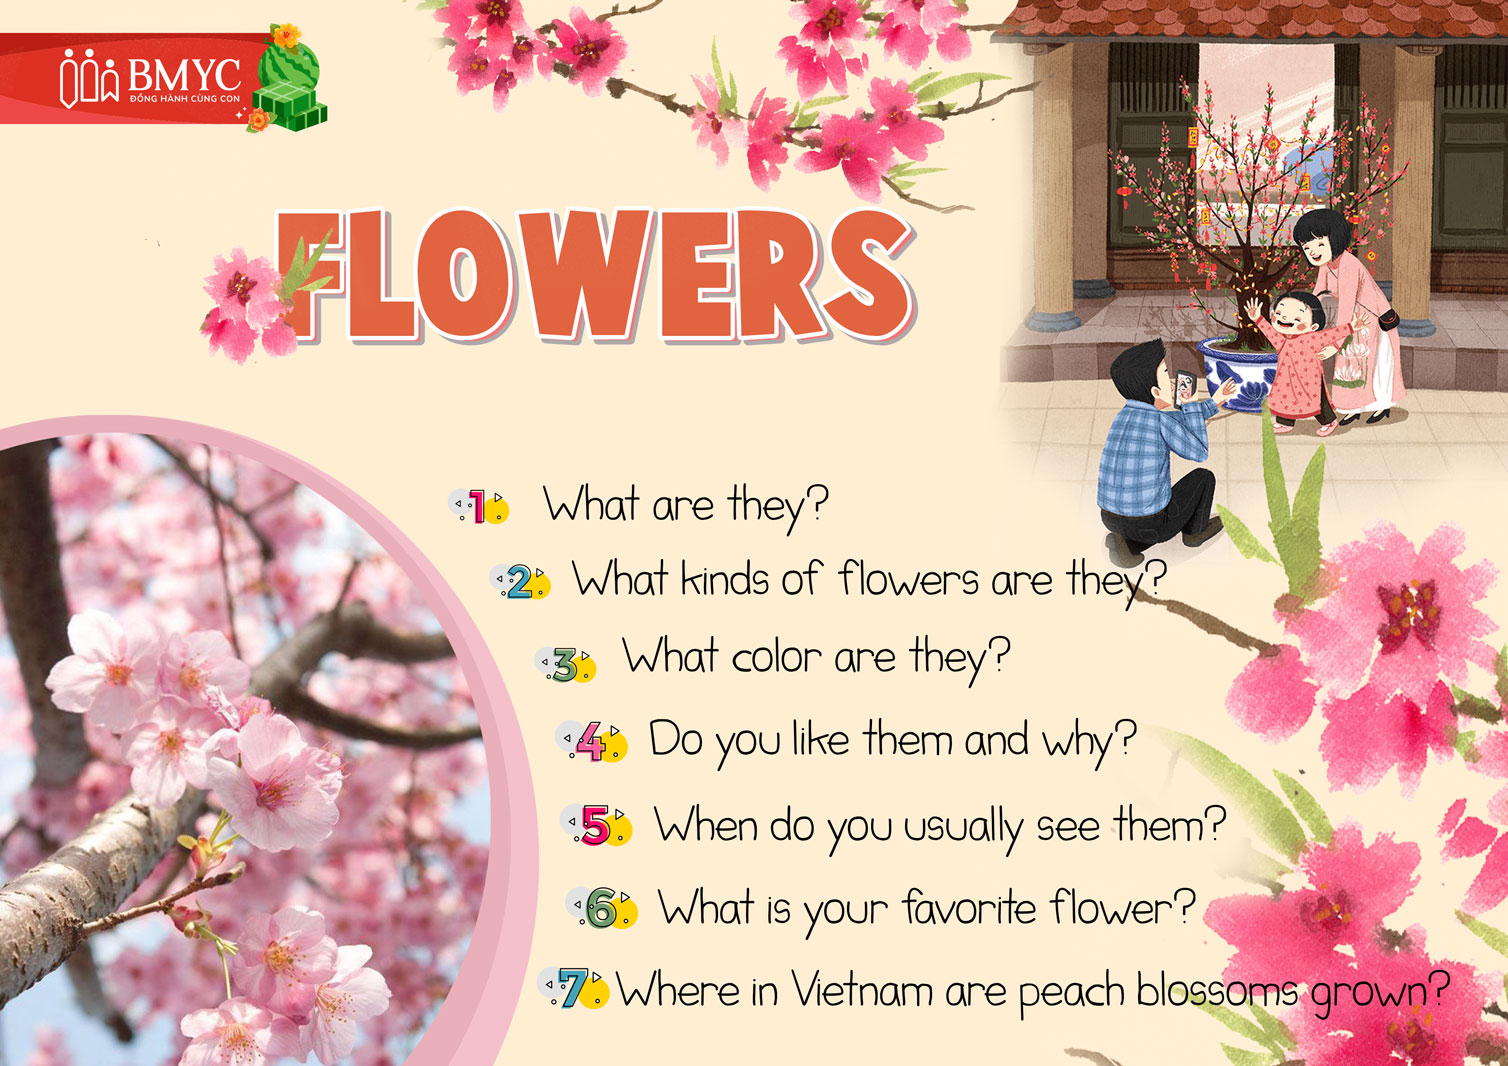 Mẫu câu hỏi tương tác chủ đề "Flowers" ngày Tết bằng tiếng Anh